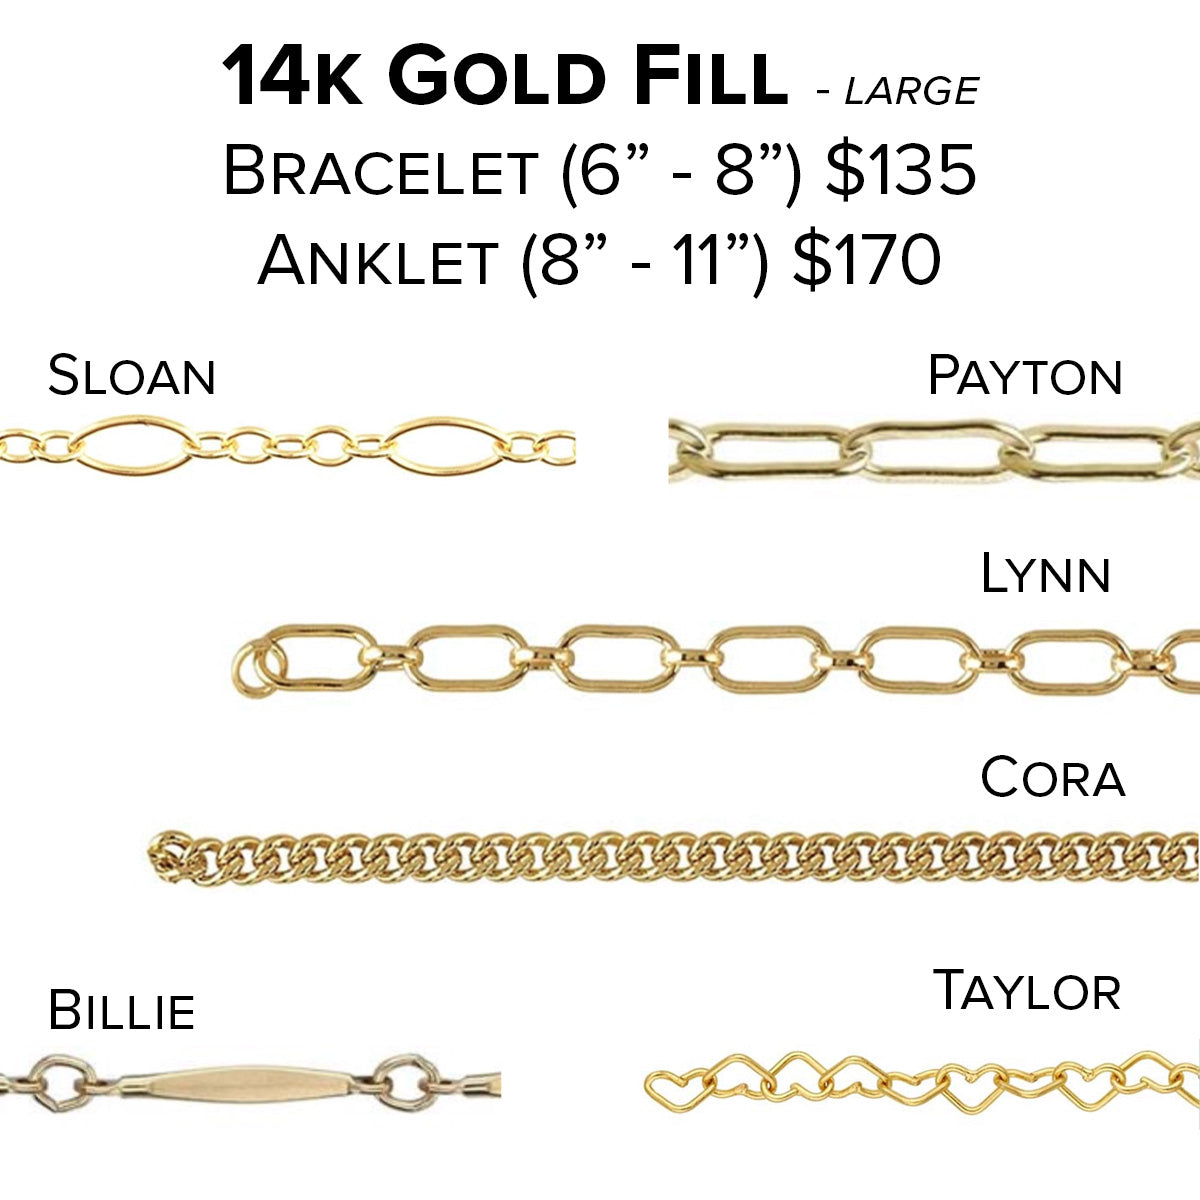 BILLIE - Super Chunky Gold Chain Bracelet